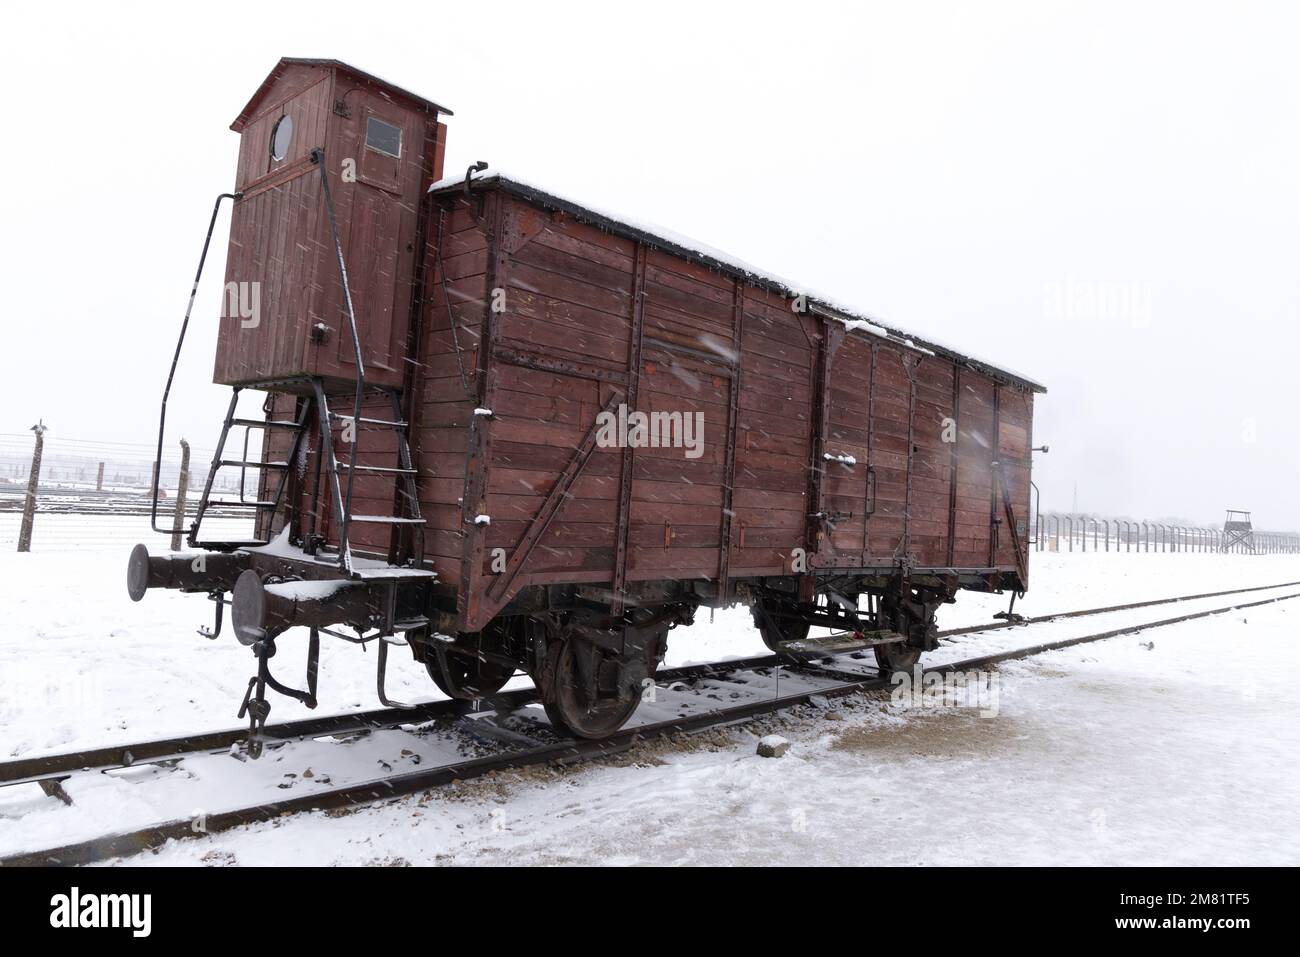 Ein Zugwagen aus dem Zweiten Weltkrieg brachte juden in das Konzentrationslager Auschwitz Birkenau; im Winter Schnee; Auschwitz Museum, Oswiecim, Polen Stockfoto